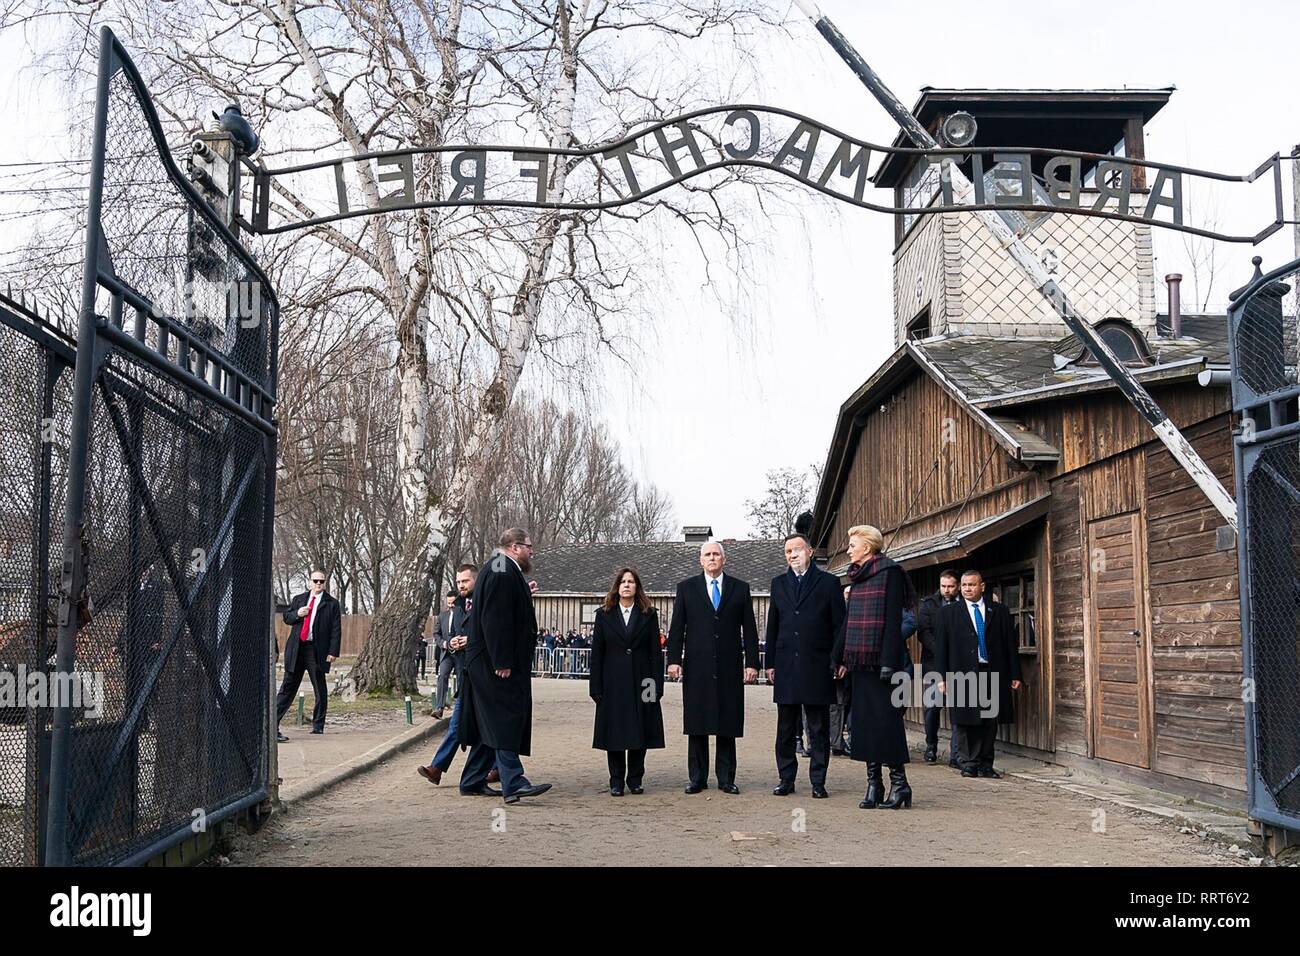 Le Vice-président américain Mike Pence, Président polonais Andrzej Duda et leurs femmes se tenir sous la porte à la camp de concentration Auschwitz-Birkenau le 15 février 2019 à Oswiecim, Pologne. Debout de gauche à droite sont : Karen Pence, Vice-président Mike Pence, Président polonais Andrzej Duda et sa femme Kornhauser-Duda Agata. Banque D'Images